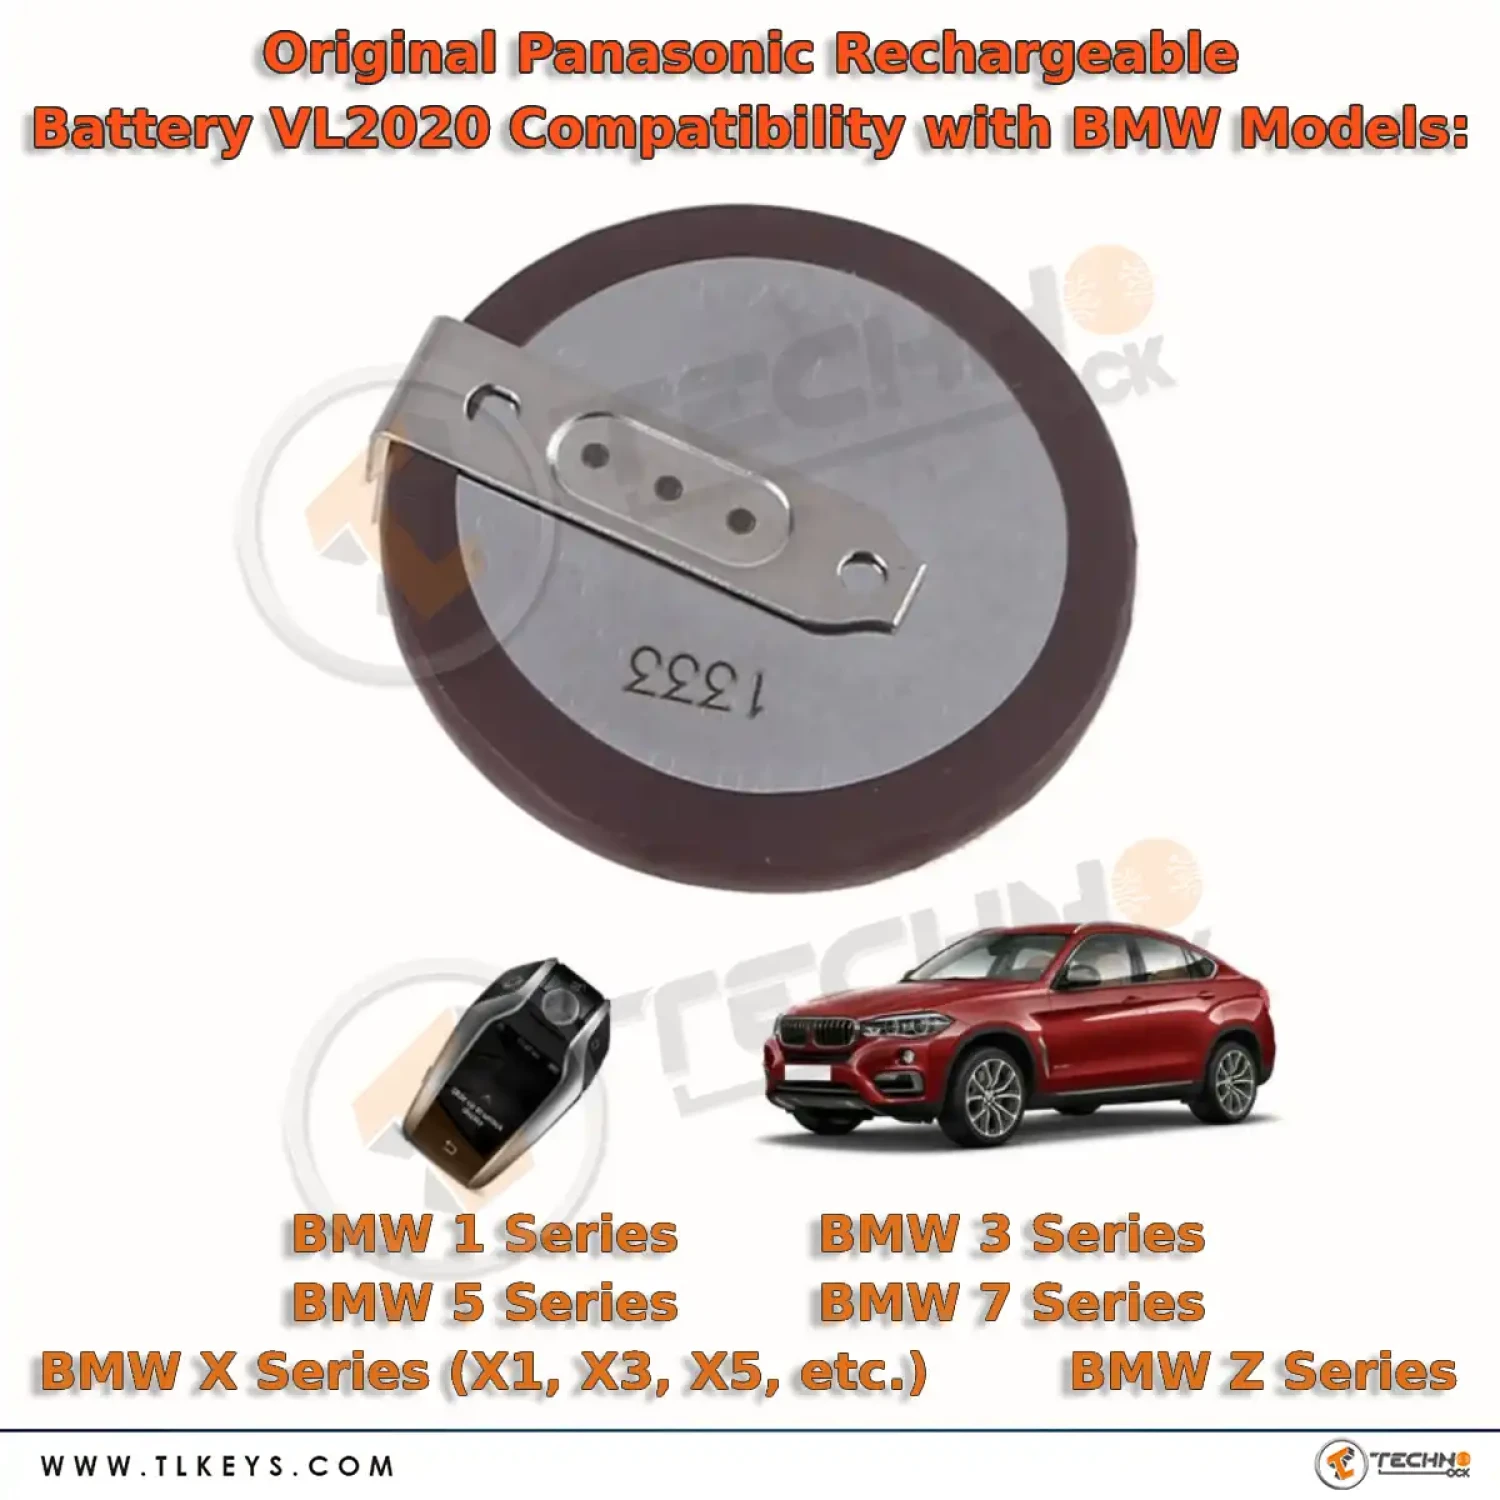 https://dev-srv.tlkeys.com/storage/images/battery/panasonic/original-panasonic-battery-bmw-40196/Original-Panasonic-Rechargeable-Battery-VL202-Compatibility-with-BMW-Models.webp